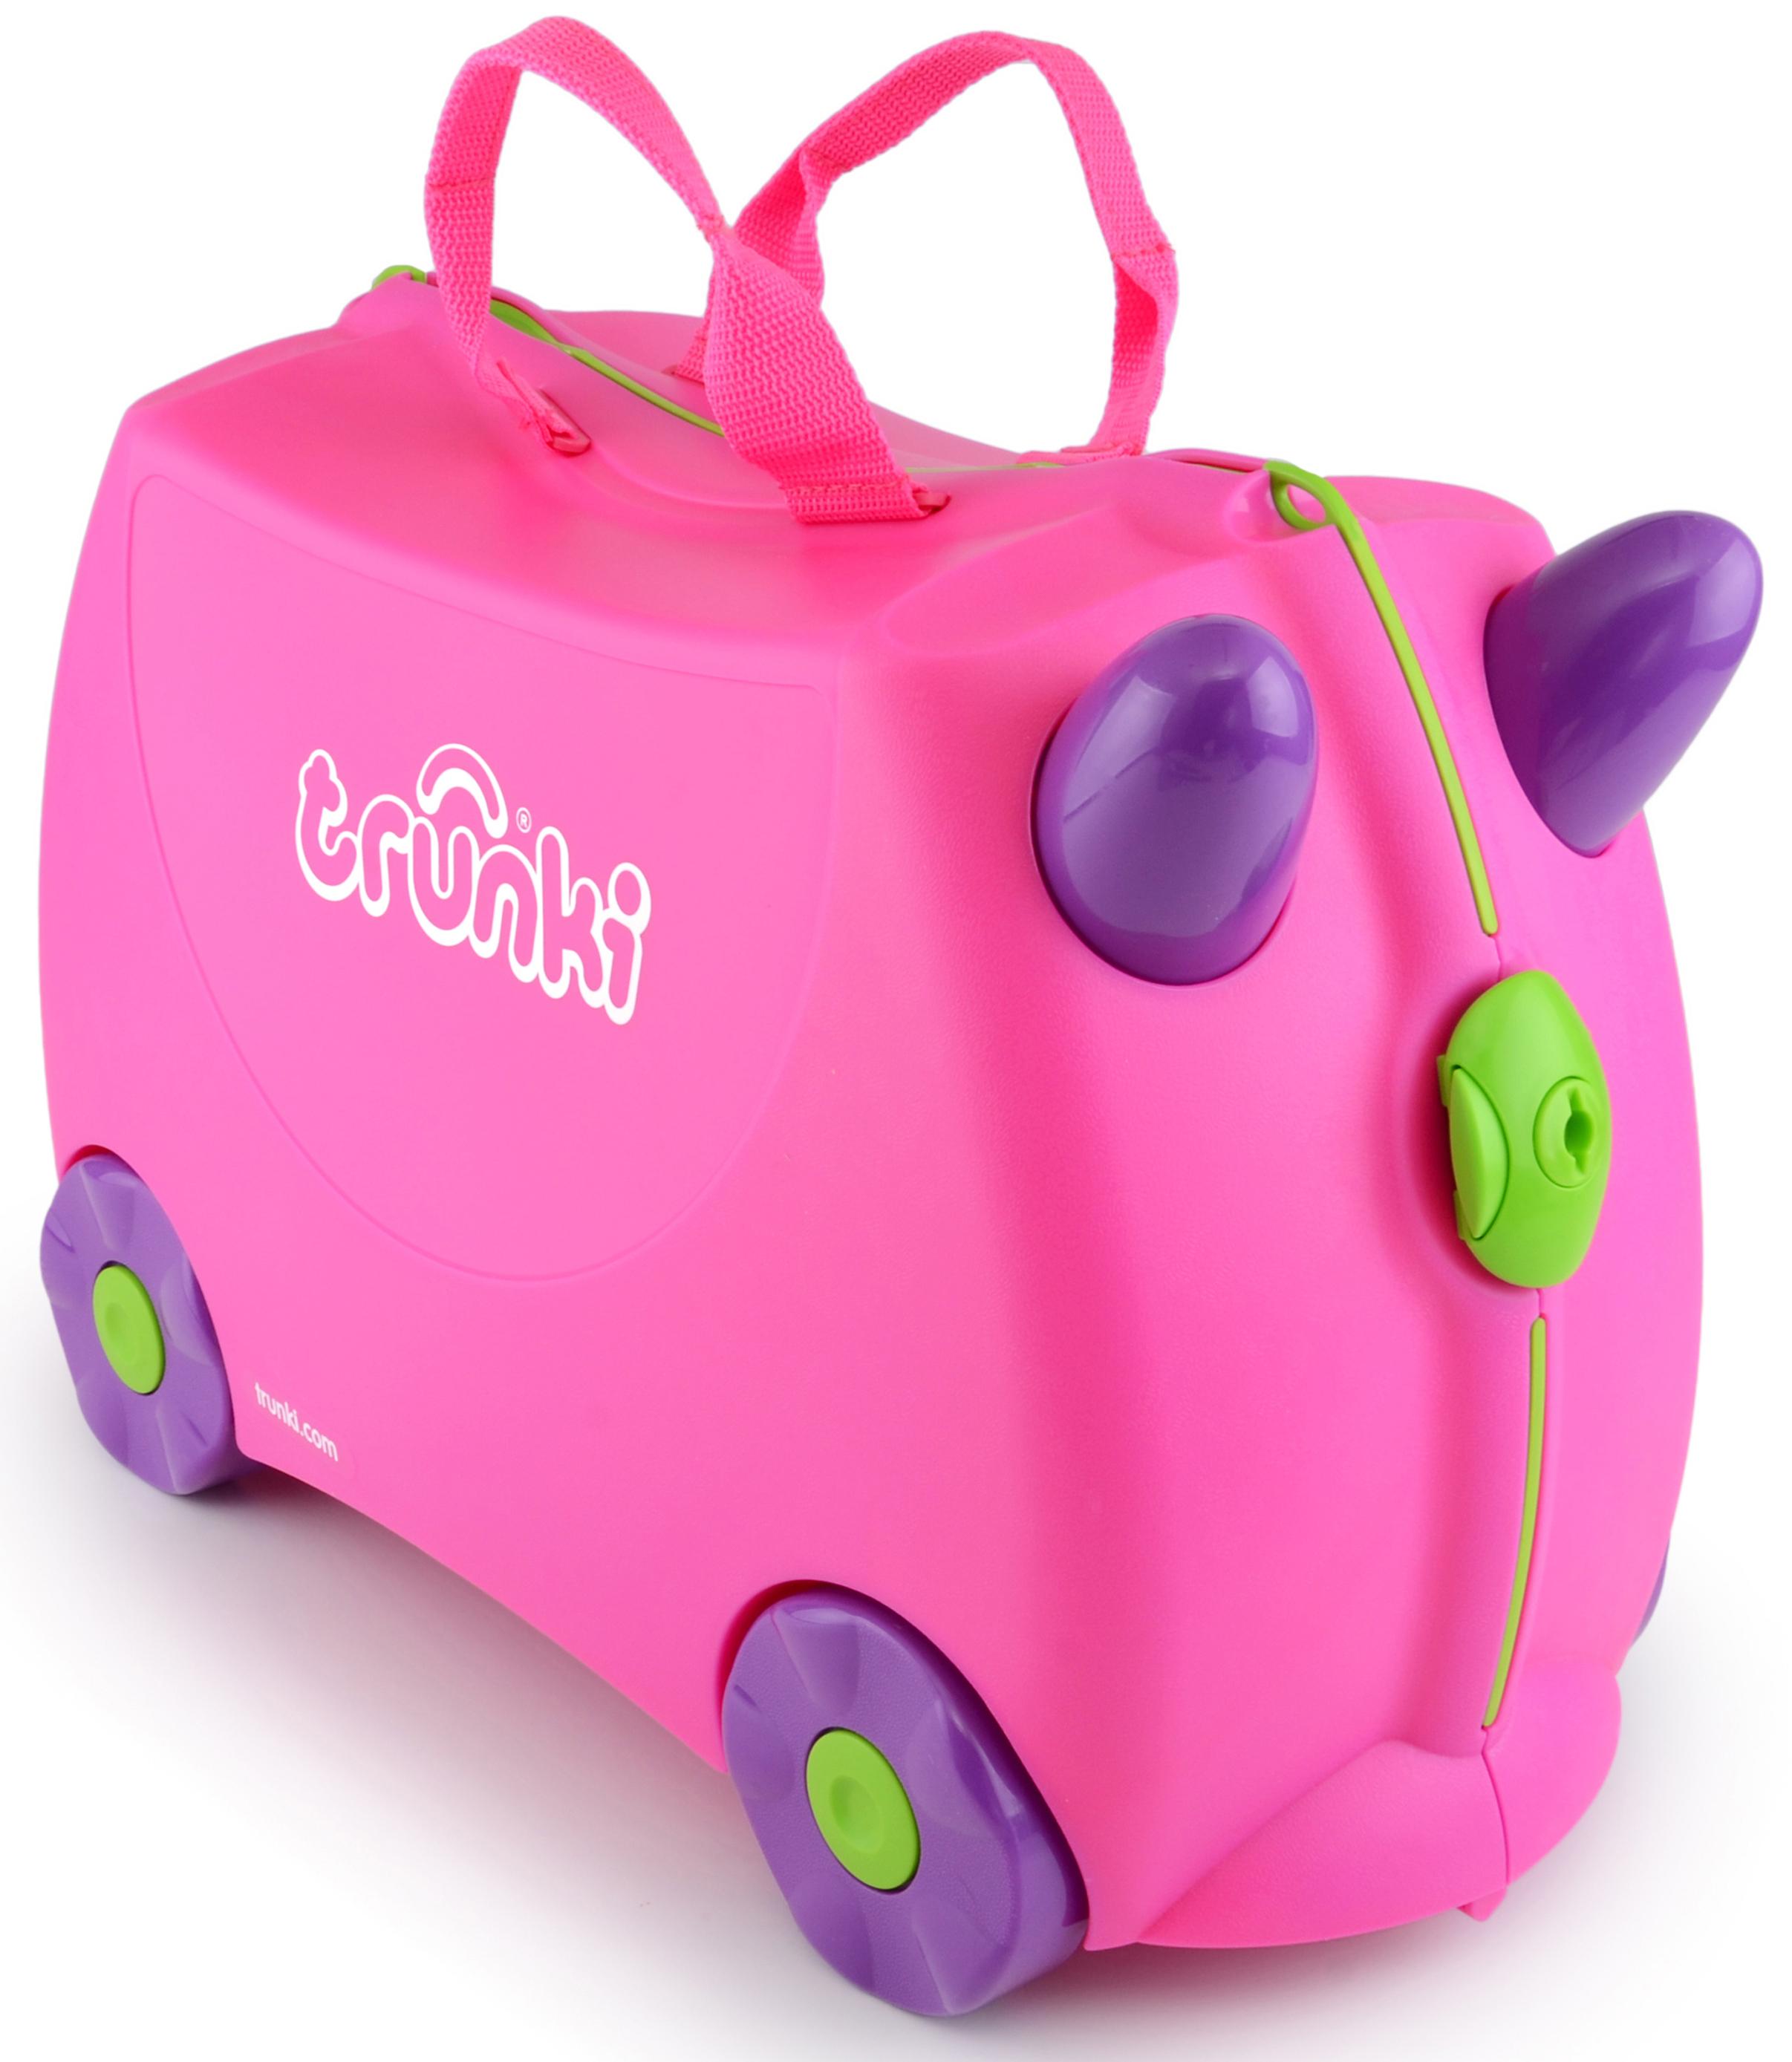 Trunki Trixie Ride On Suitcase